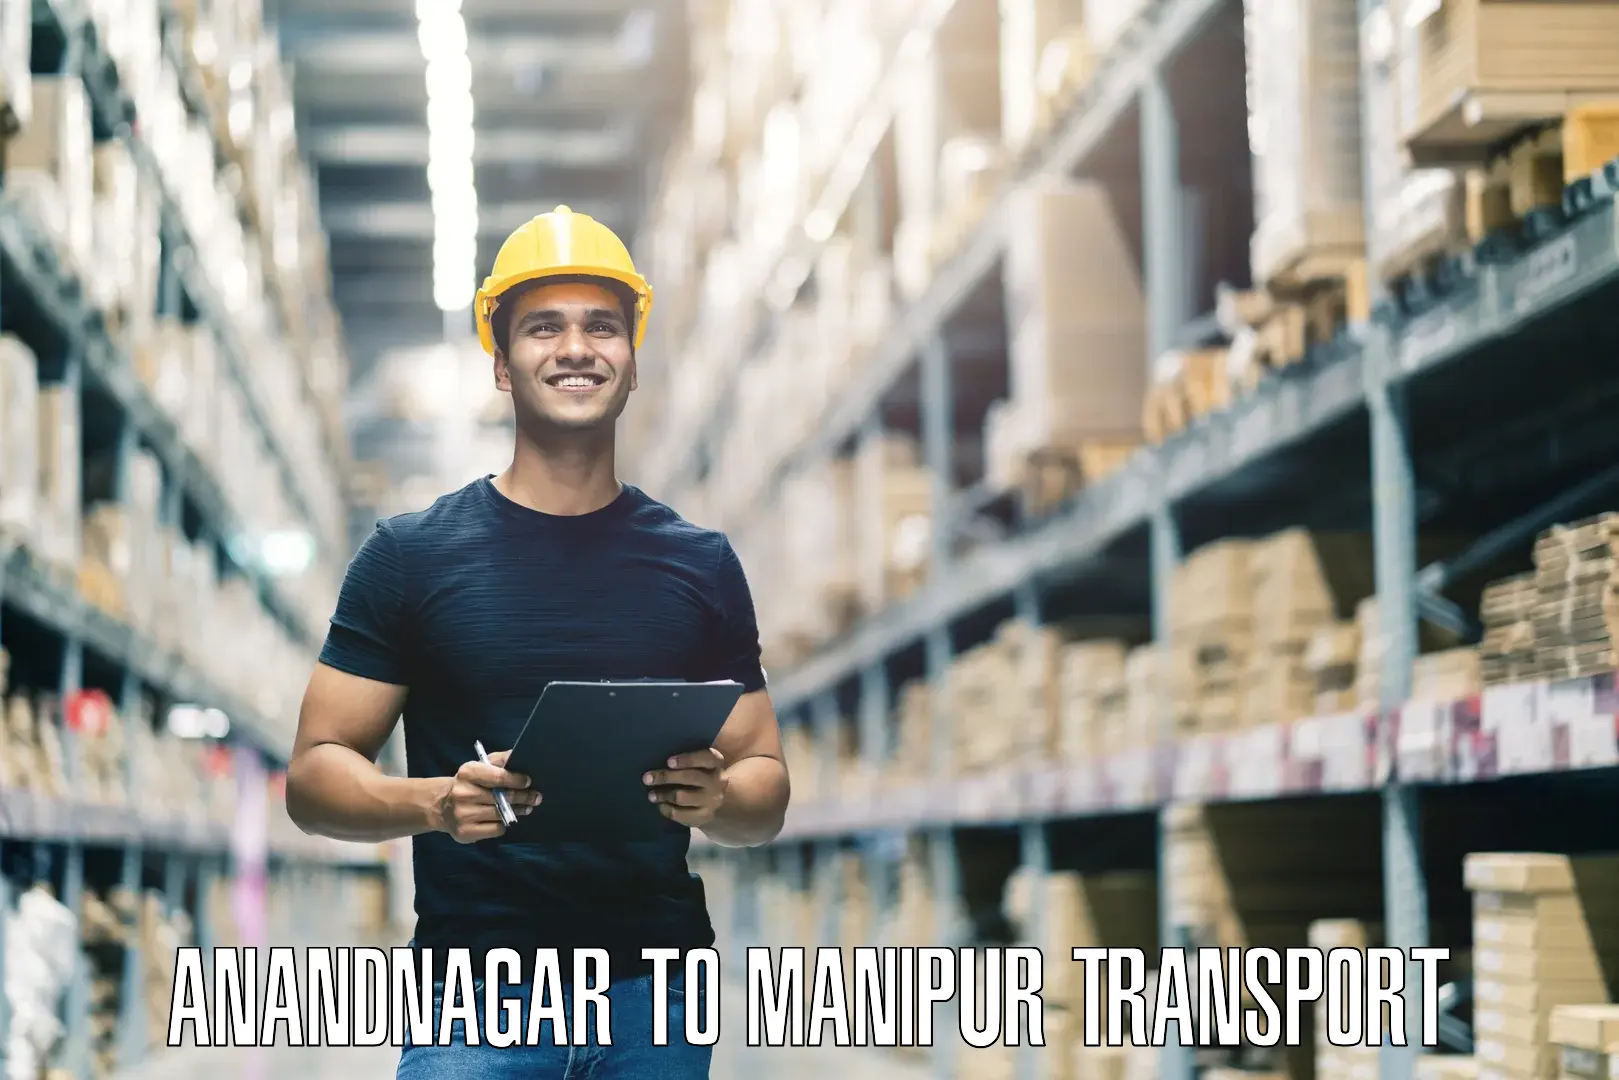 Commercial transport service Anandnagar to Kangpokpi